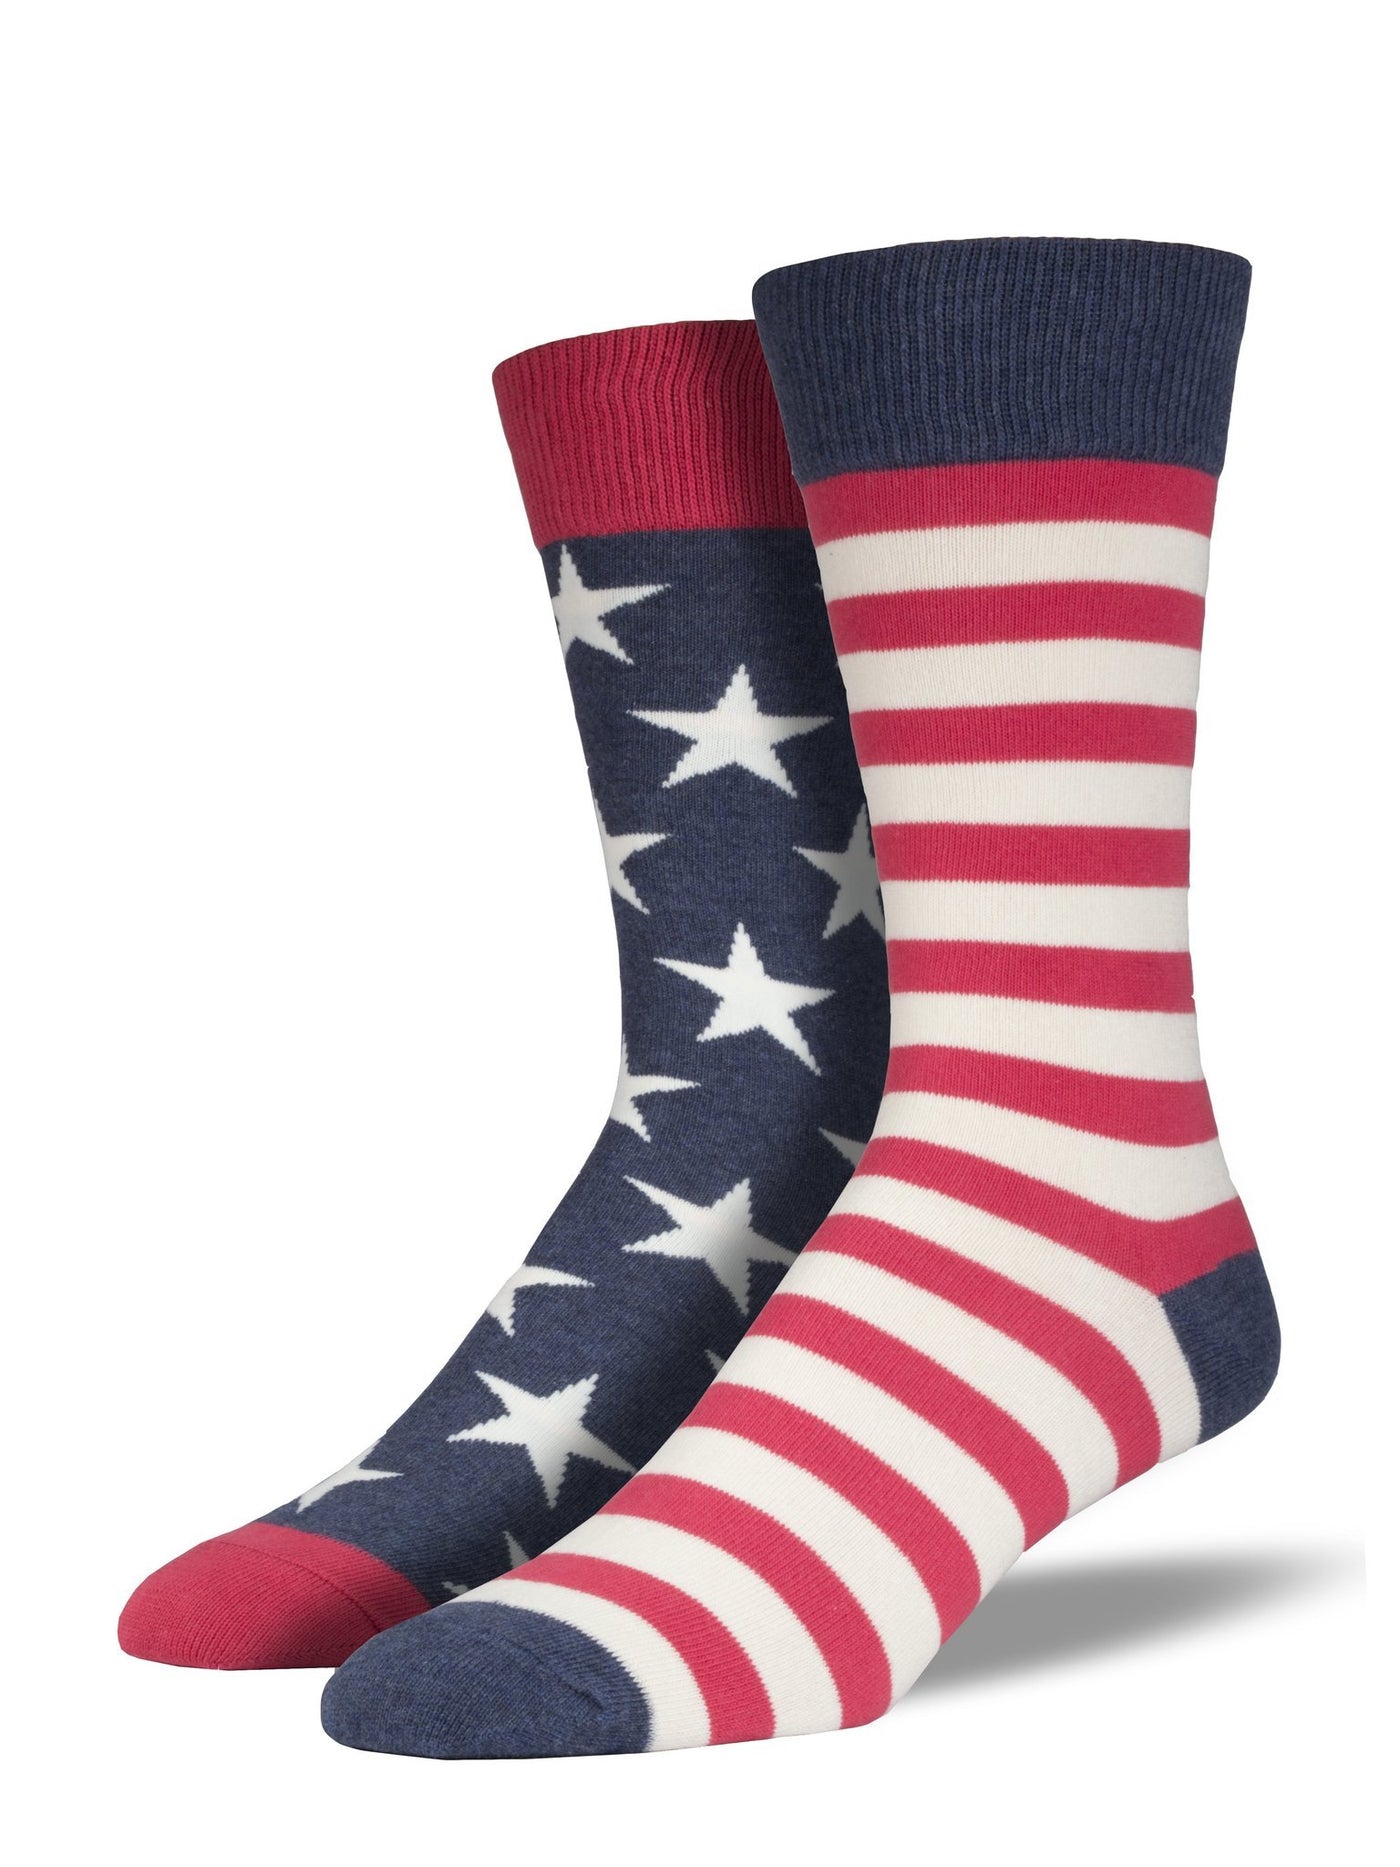 American Flag Socks for Men by Socksmith